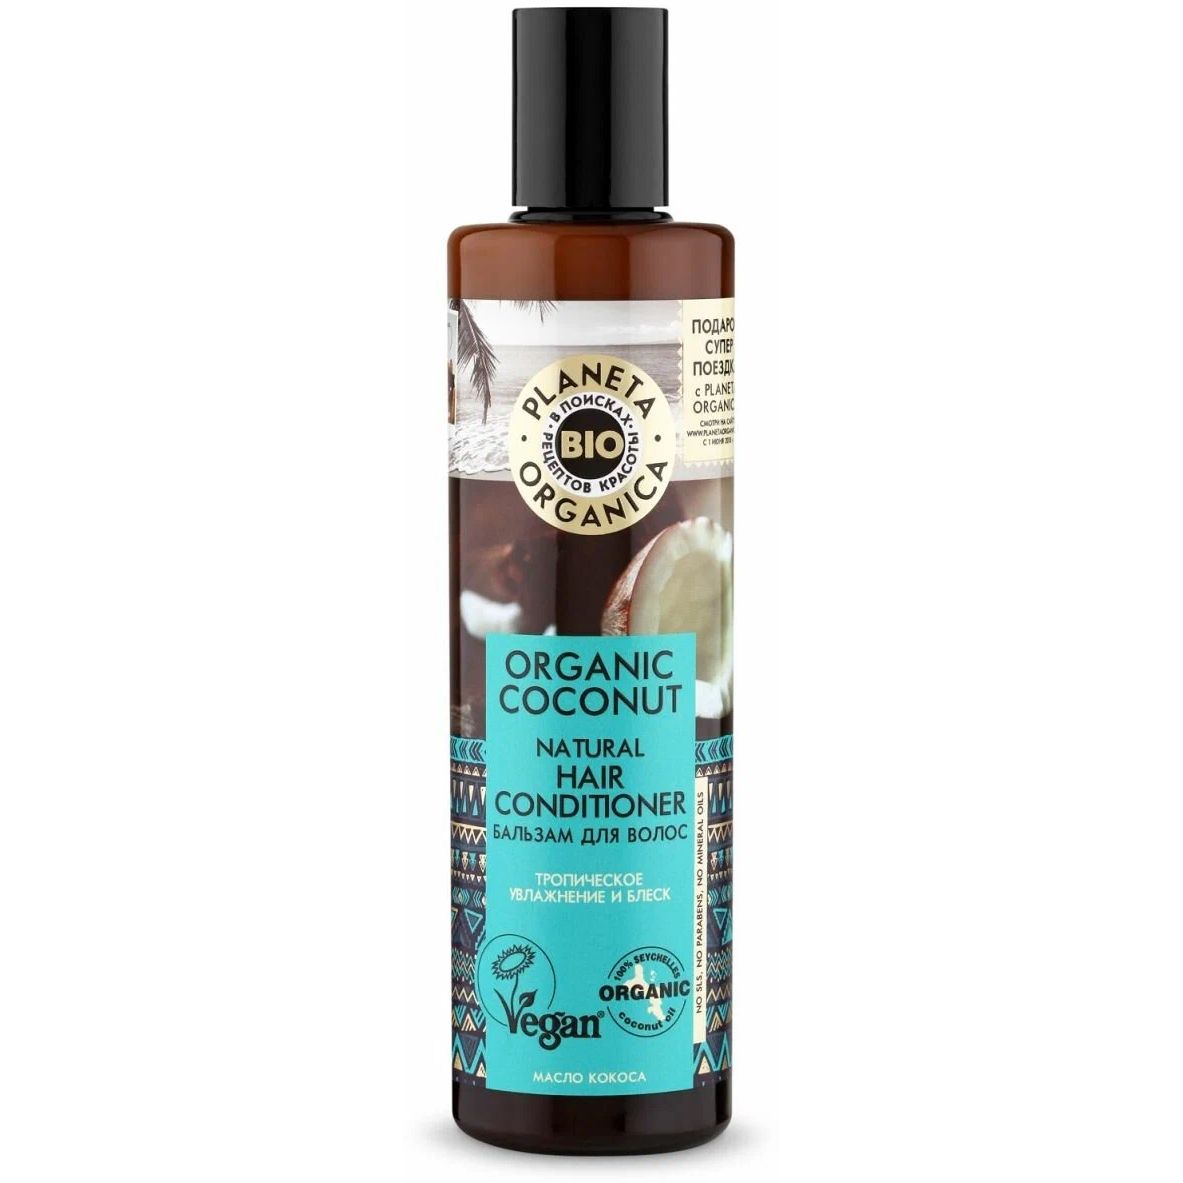 Бальзам для волос PLANETA ORGANICA Organic Coconut увлажнение и блеск, 280 мл